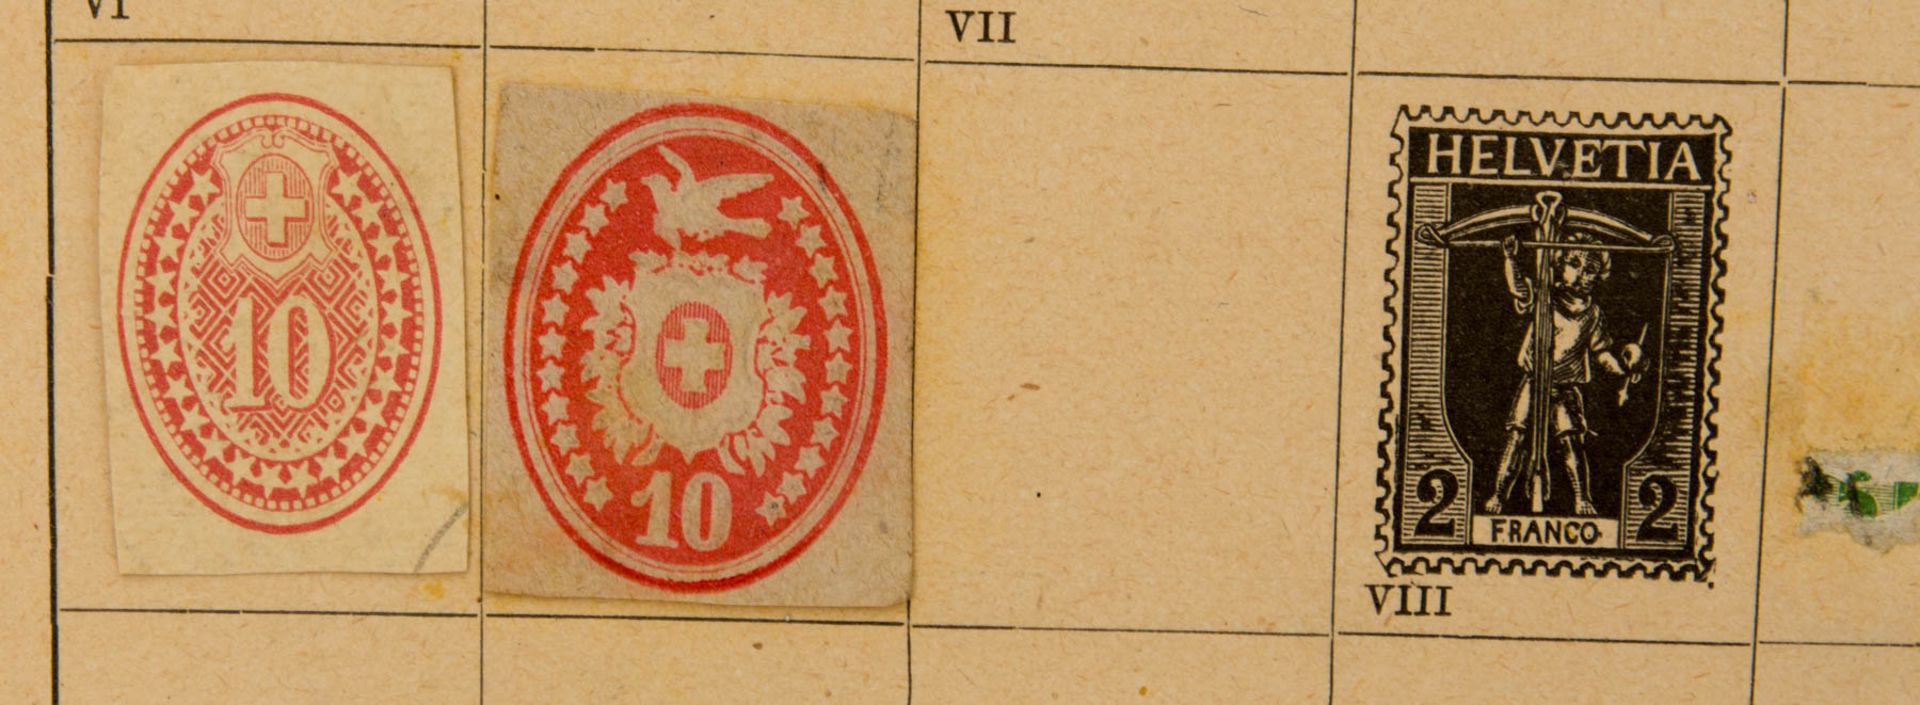 Schaubeck Album 1909.Historische Briefmarkensammlung.Schweres Schaubeckalbum (Einb - Bild 4 aus 5